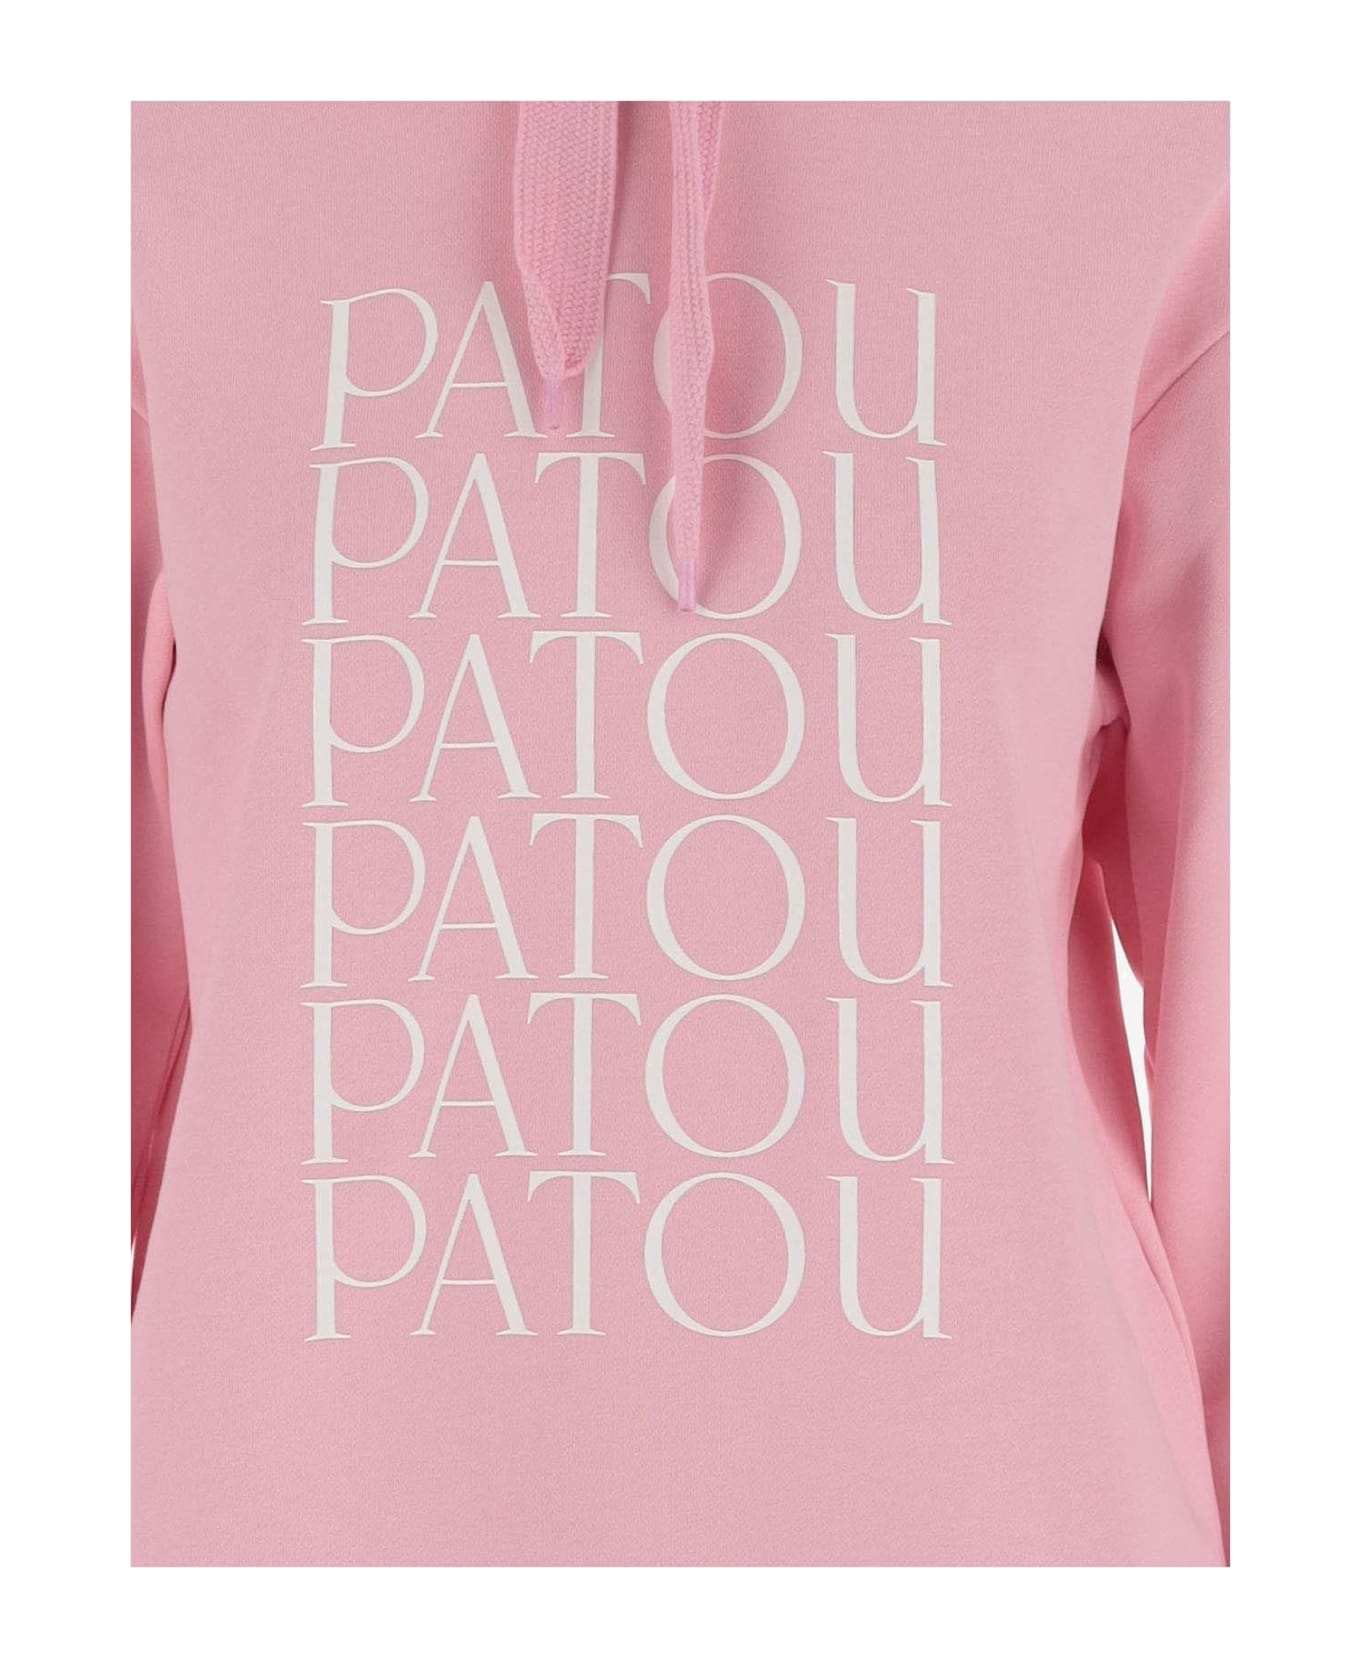 Patou Cotton Sweatshirt With Logo - Pink フリース